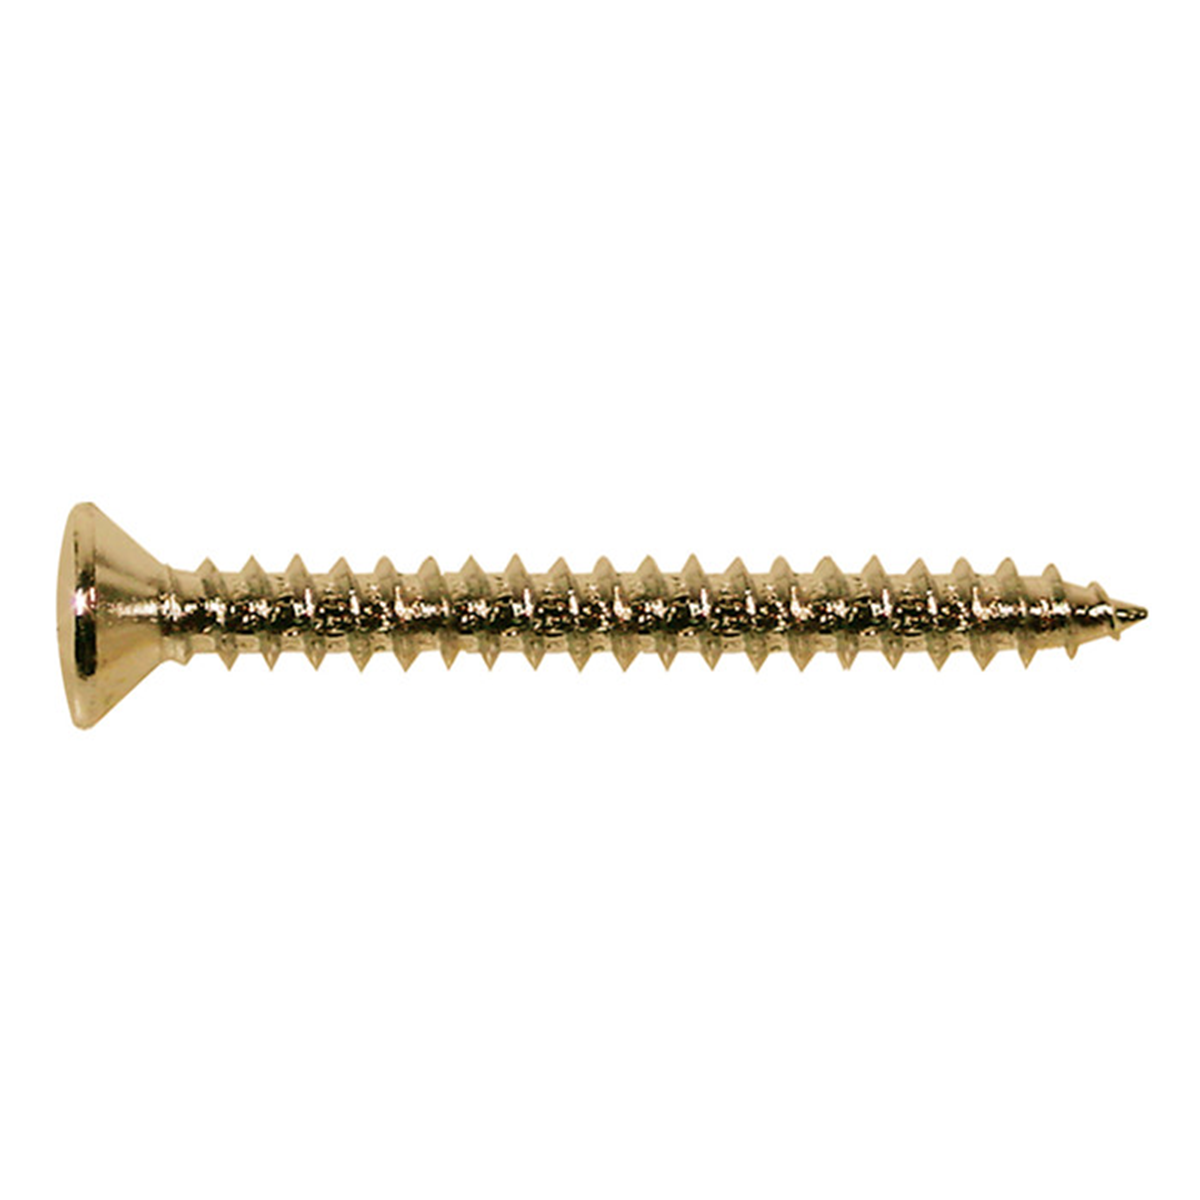 BOSTON TS-03-G screw, gold, 4x45mm, 12pcs